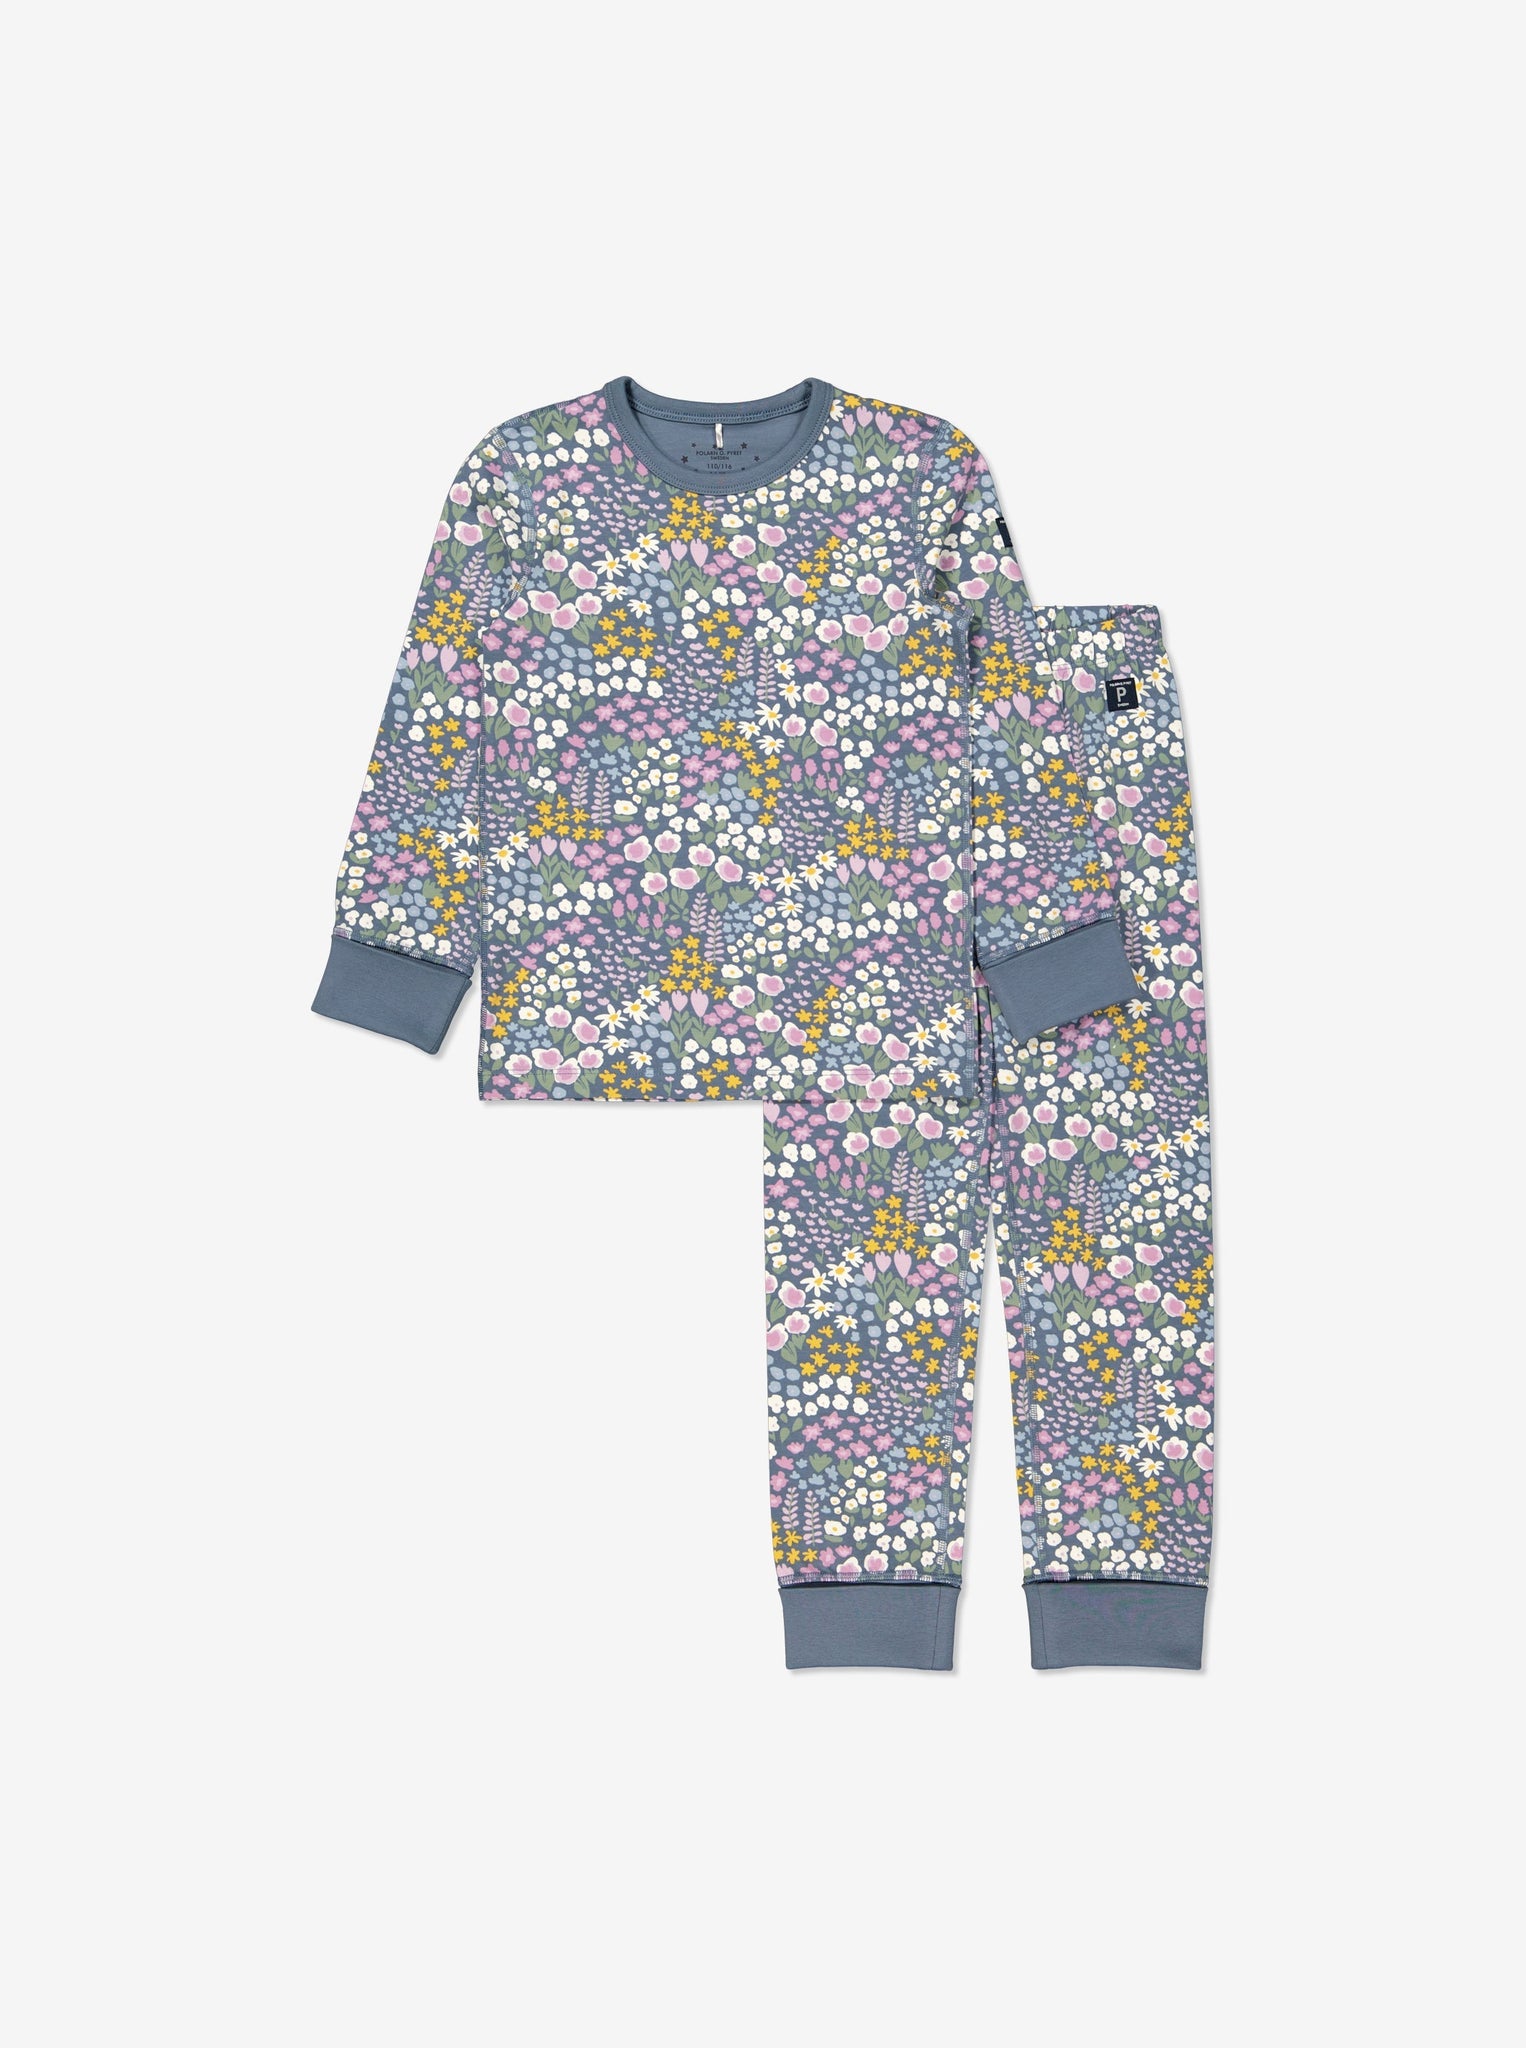 Floral Print Kids Pyjamas